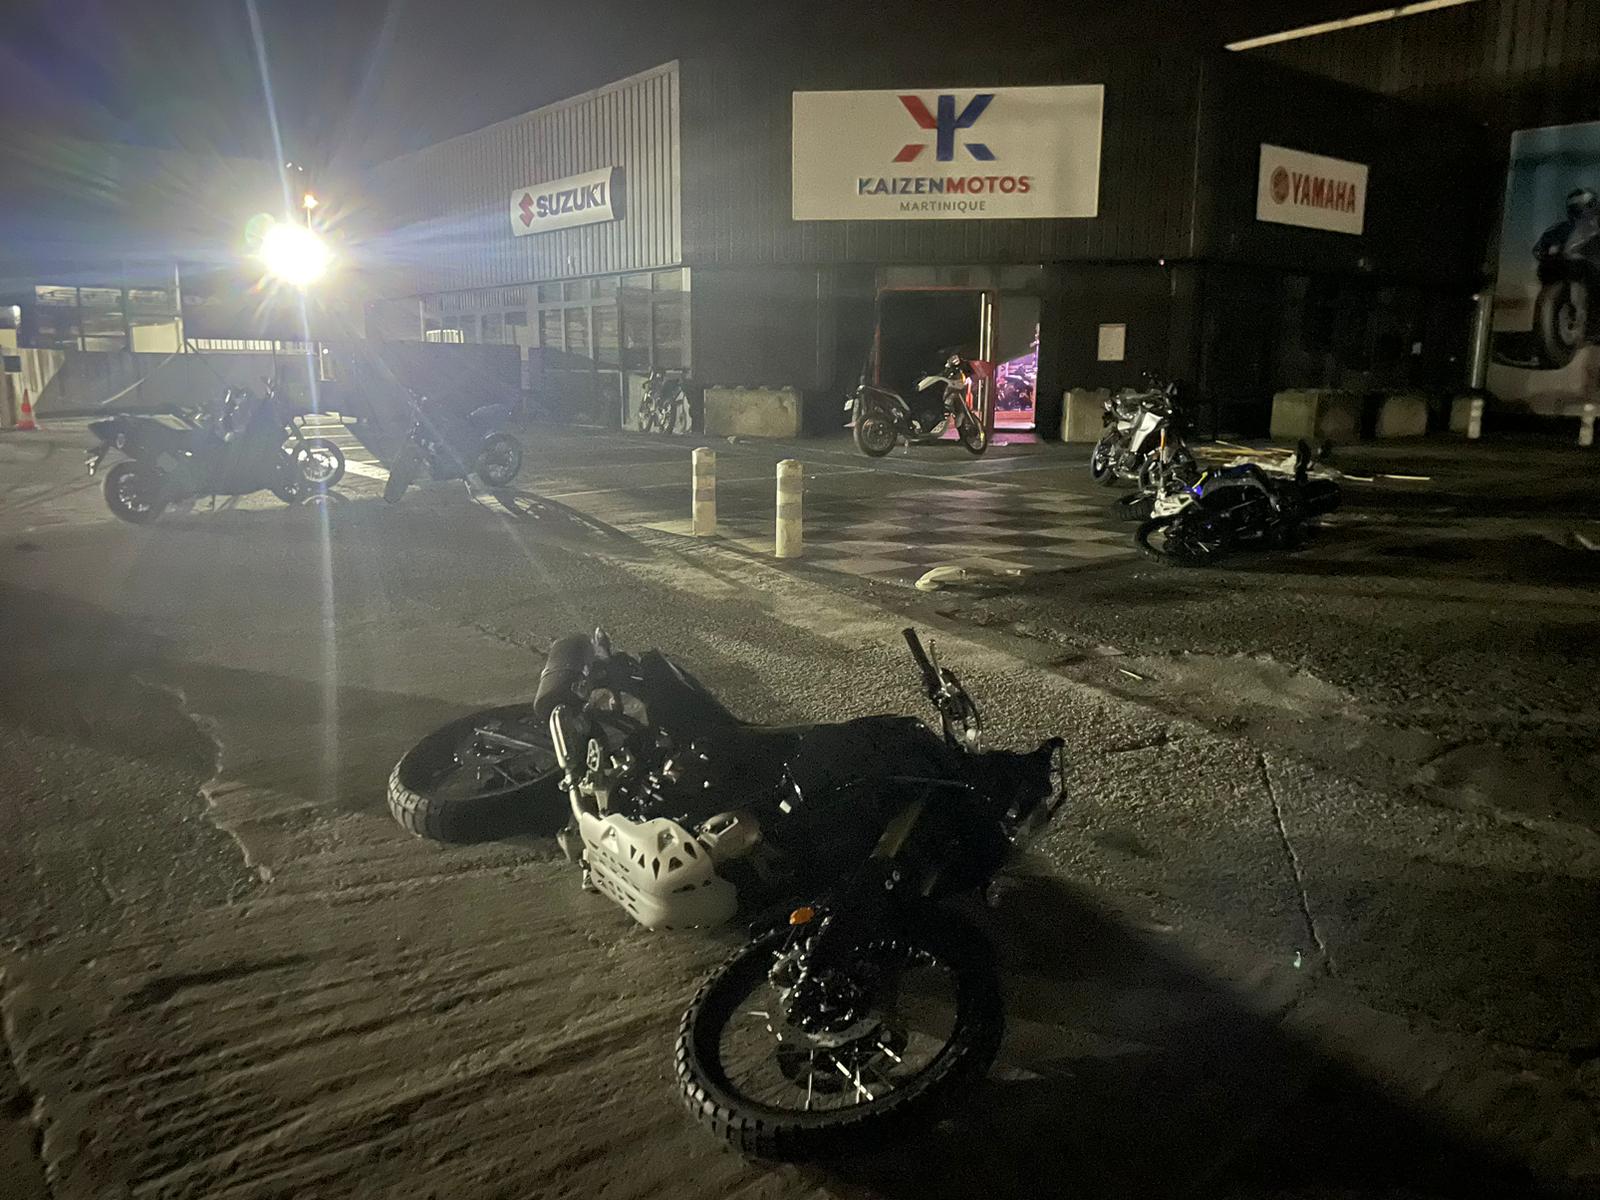     Une dizaine de motos volées à Kaizen motos cette nuit

